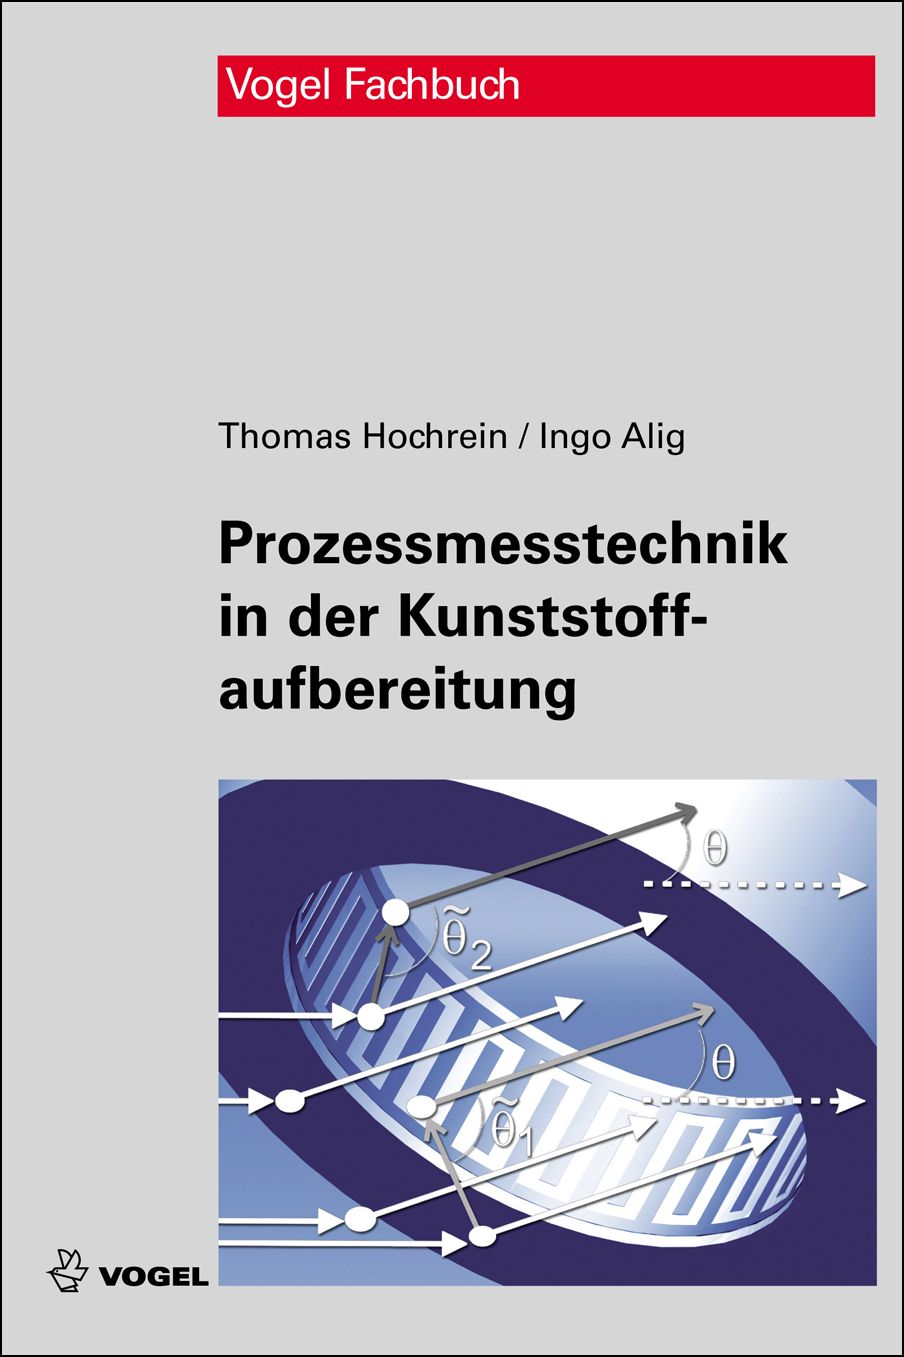 Das Fachbuch "Prozessmesstechnik in der Kunststoffaufbereitung" von Thomas Hochrein und Ingo Alig